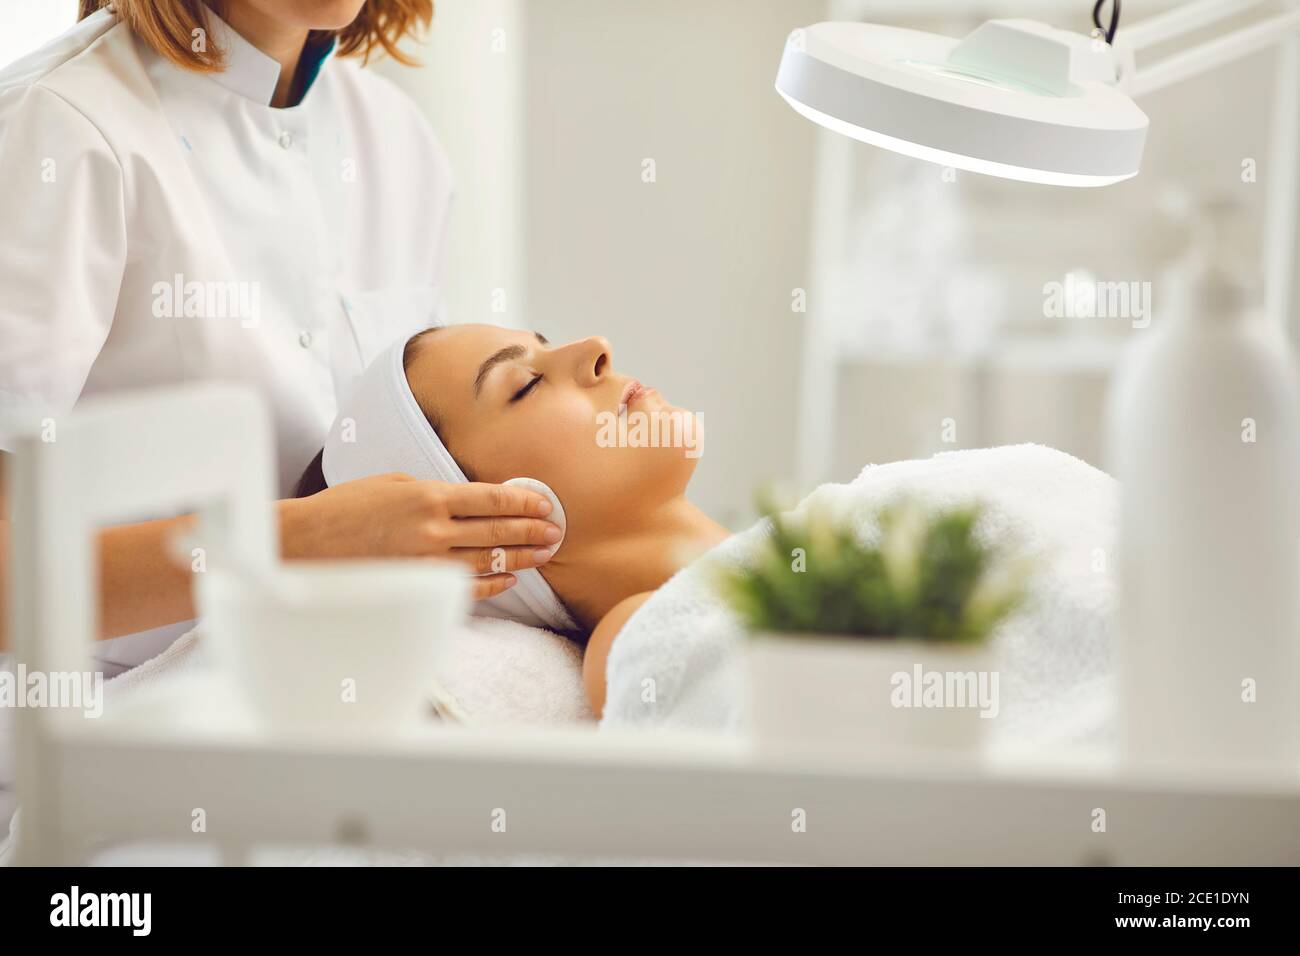 Cosmetologo pulizia viso donna con tamponi in cotone in salone di bellezza Foto Stock